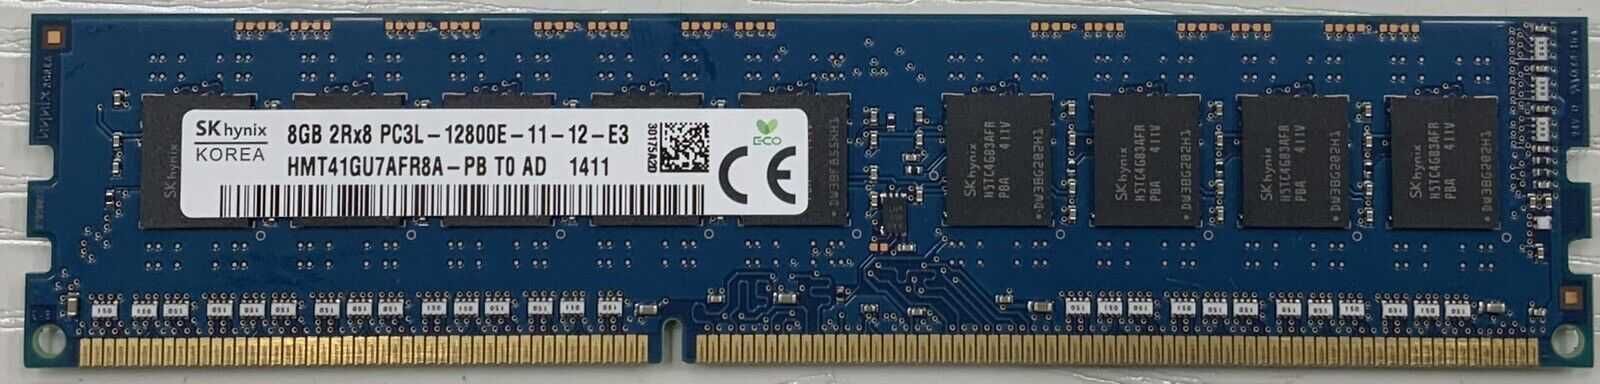 Память 4GB / 8GB DDR3 DDR3L PC3-10600/12800 1333/1600/1866MHz